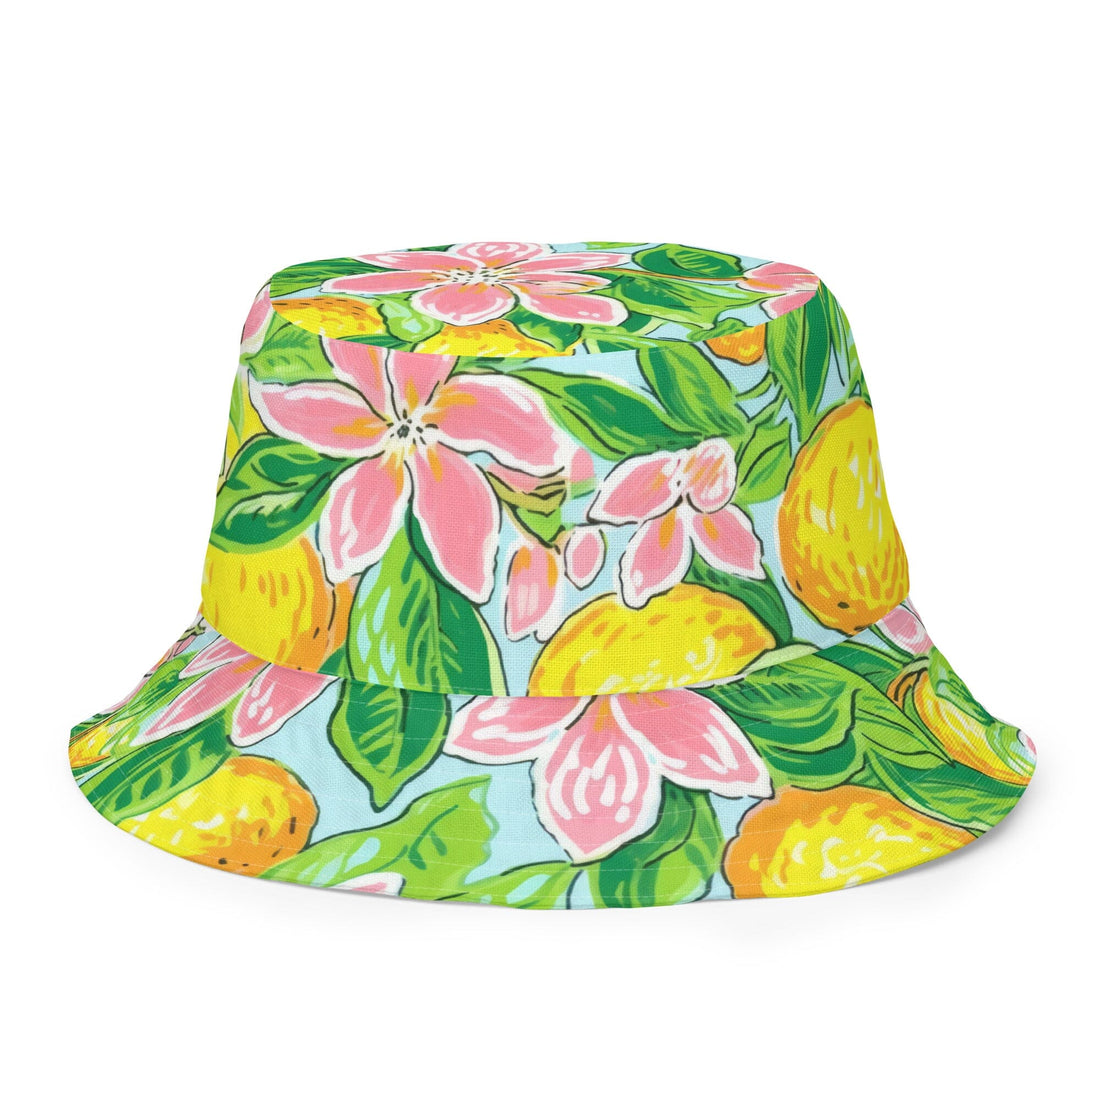 Island Mix Bucket Hat-Coastal Cool